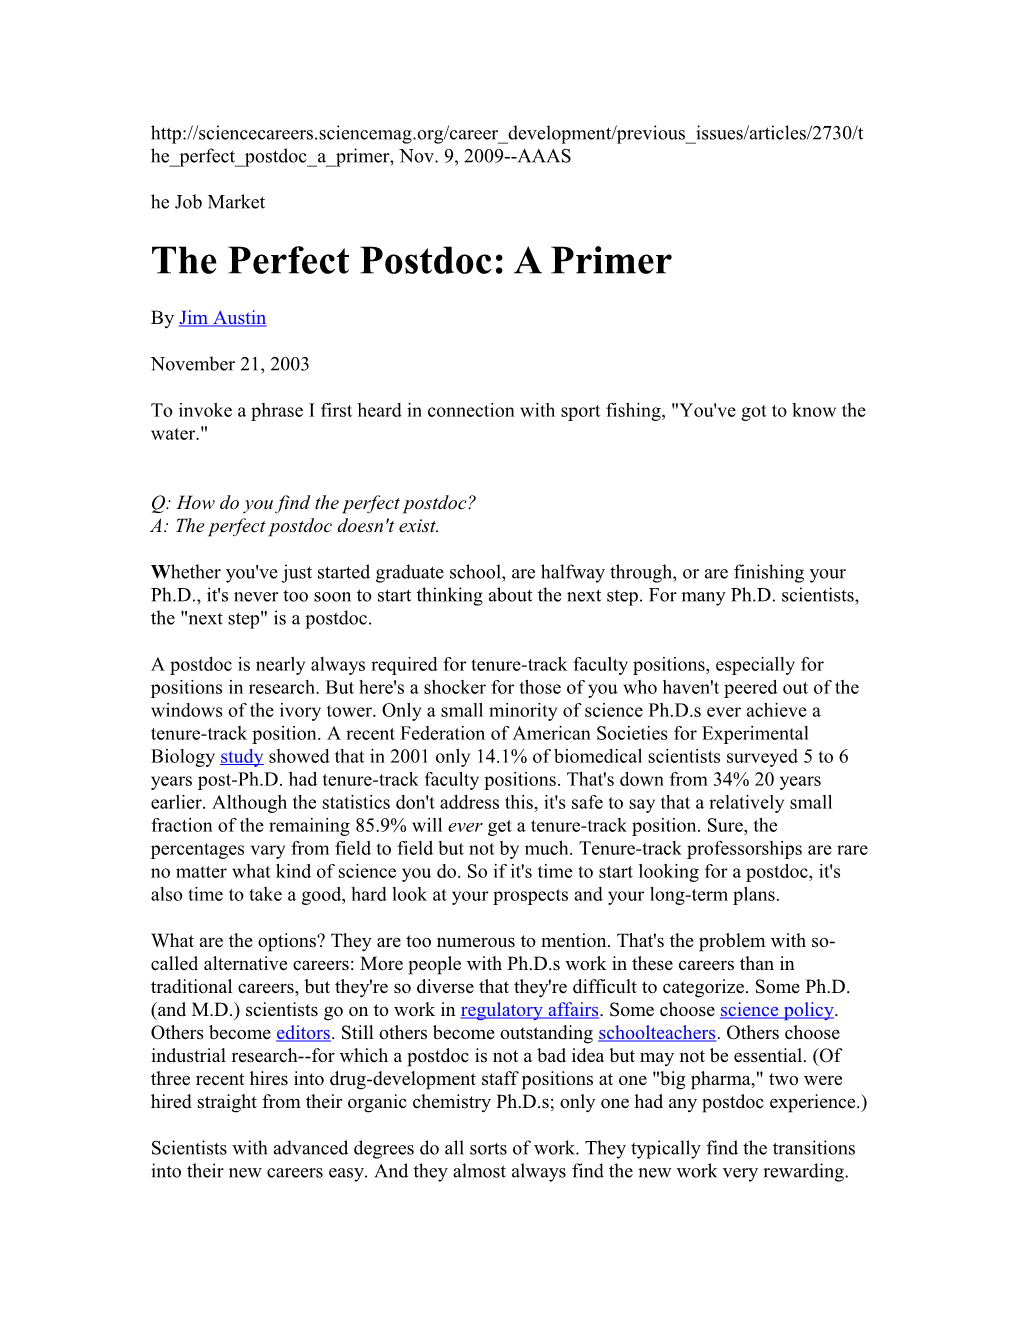 The Perfect Postdoc: a Primer